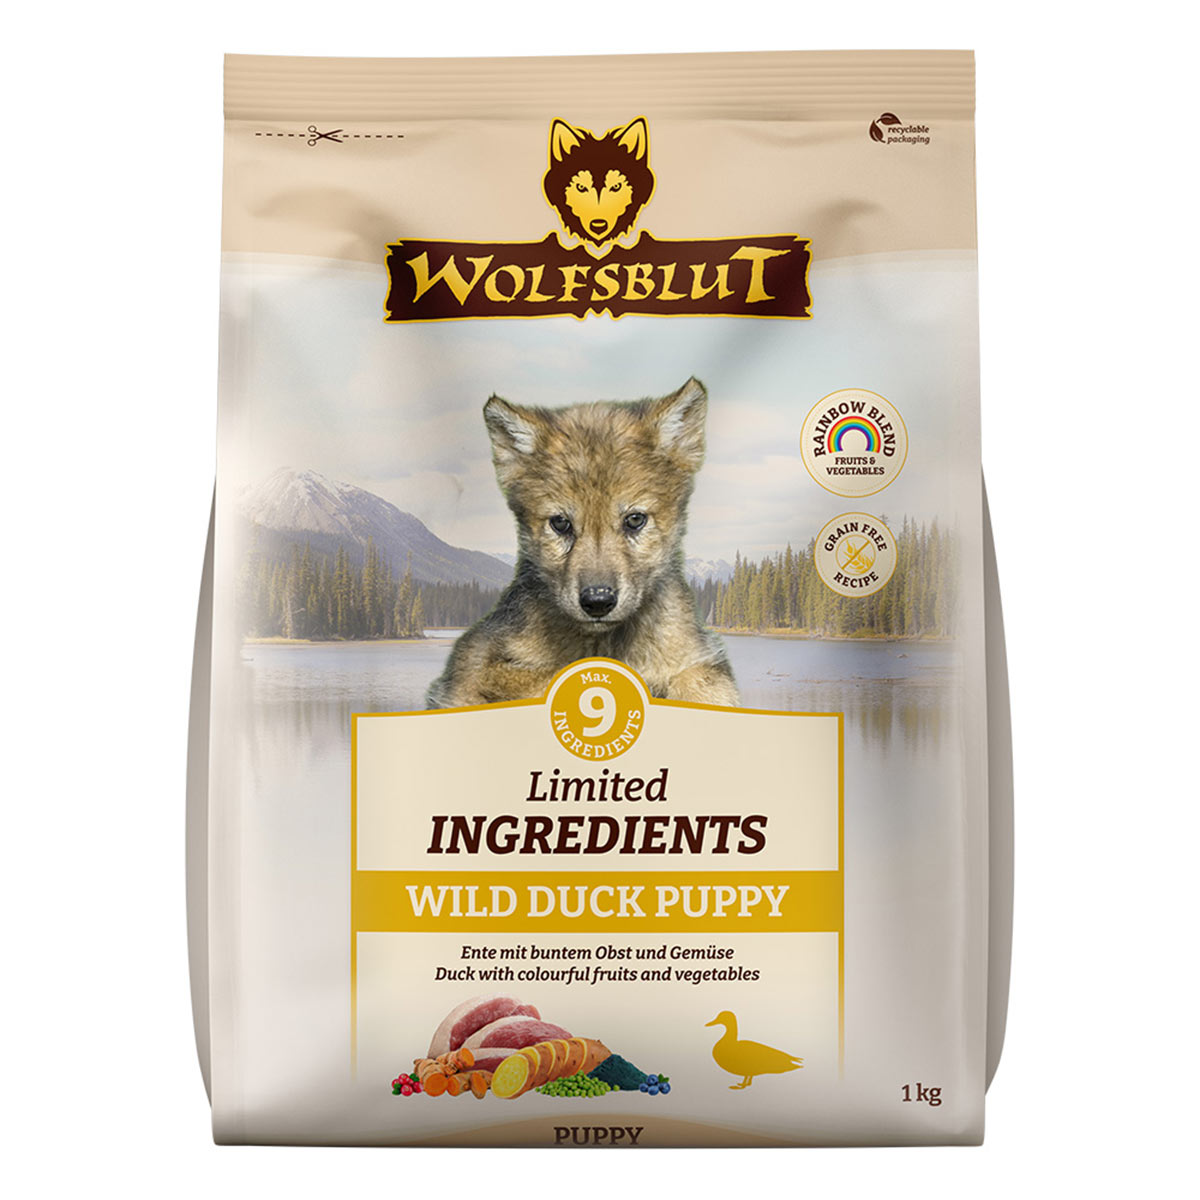 Wolfsblut Limited Ingredients Wild Duck Puppy